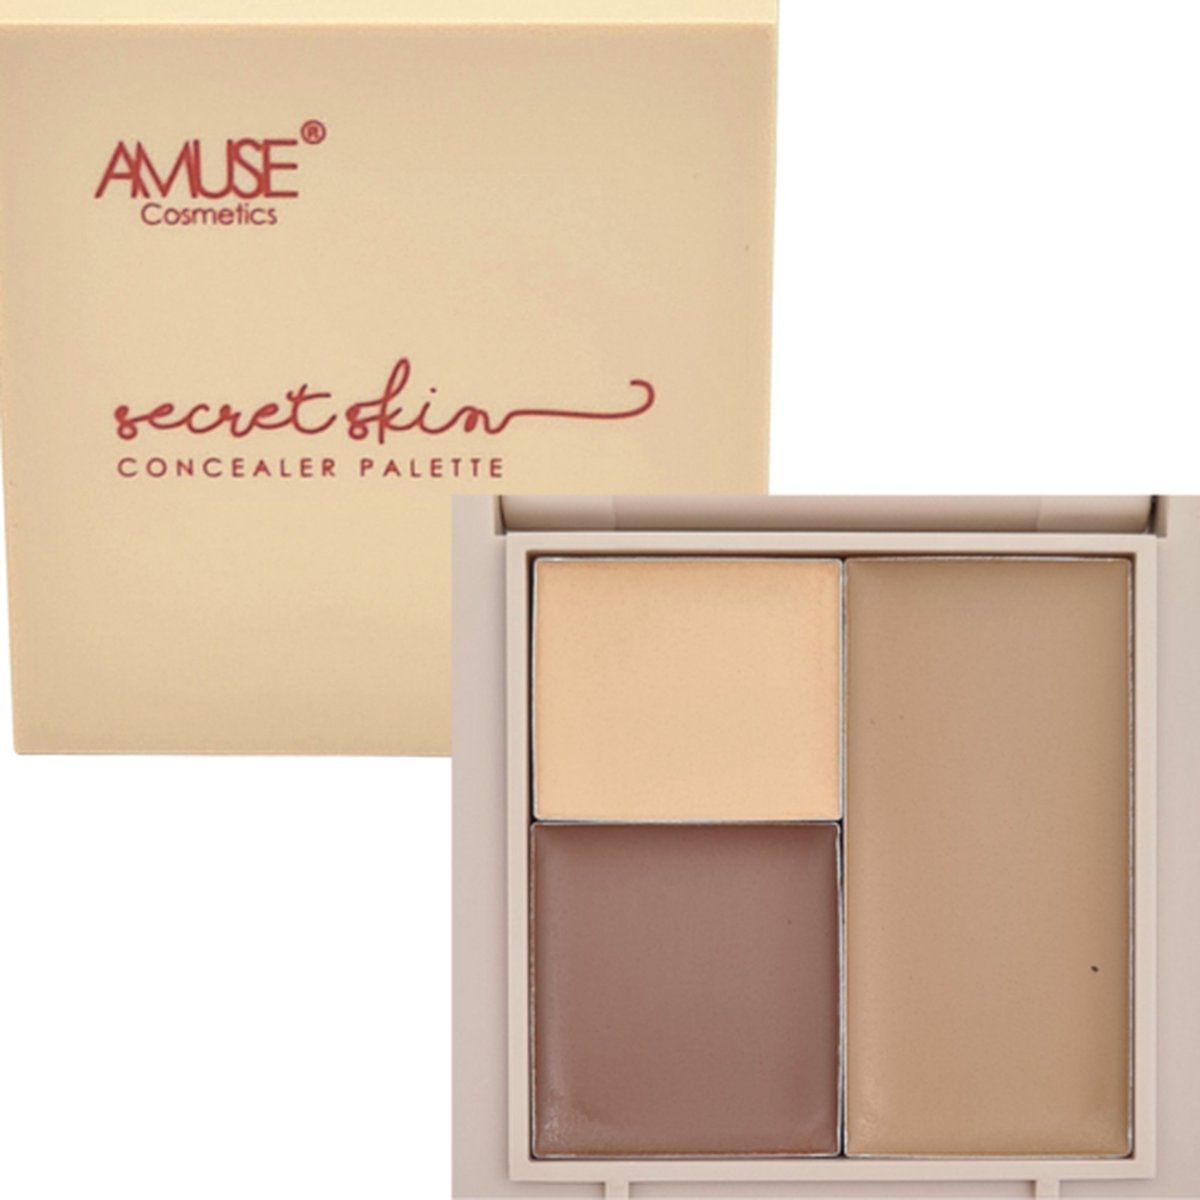 Amuse Secret Skin Concealer Palette - 02 - Medium Golden - Concealer - 5.3 g